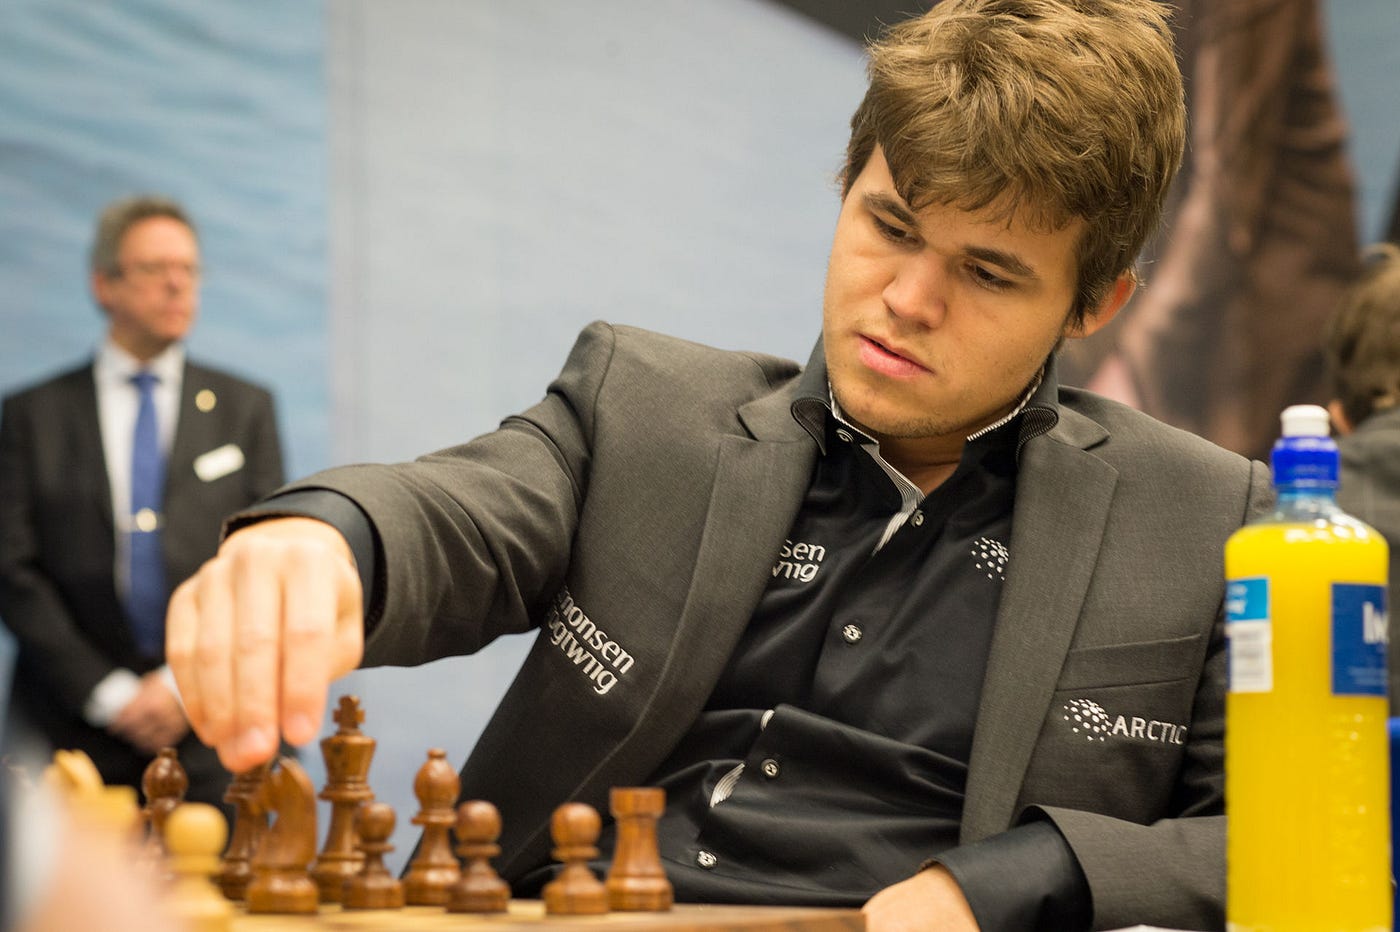 What is Magnus Carlsen's IQ? - Quora